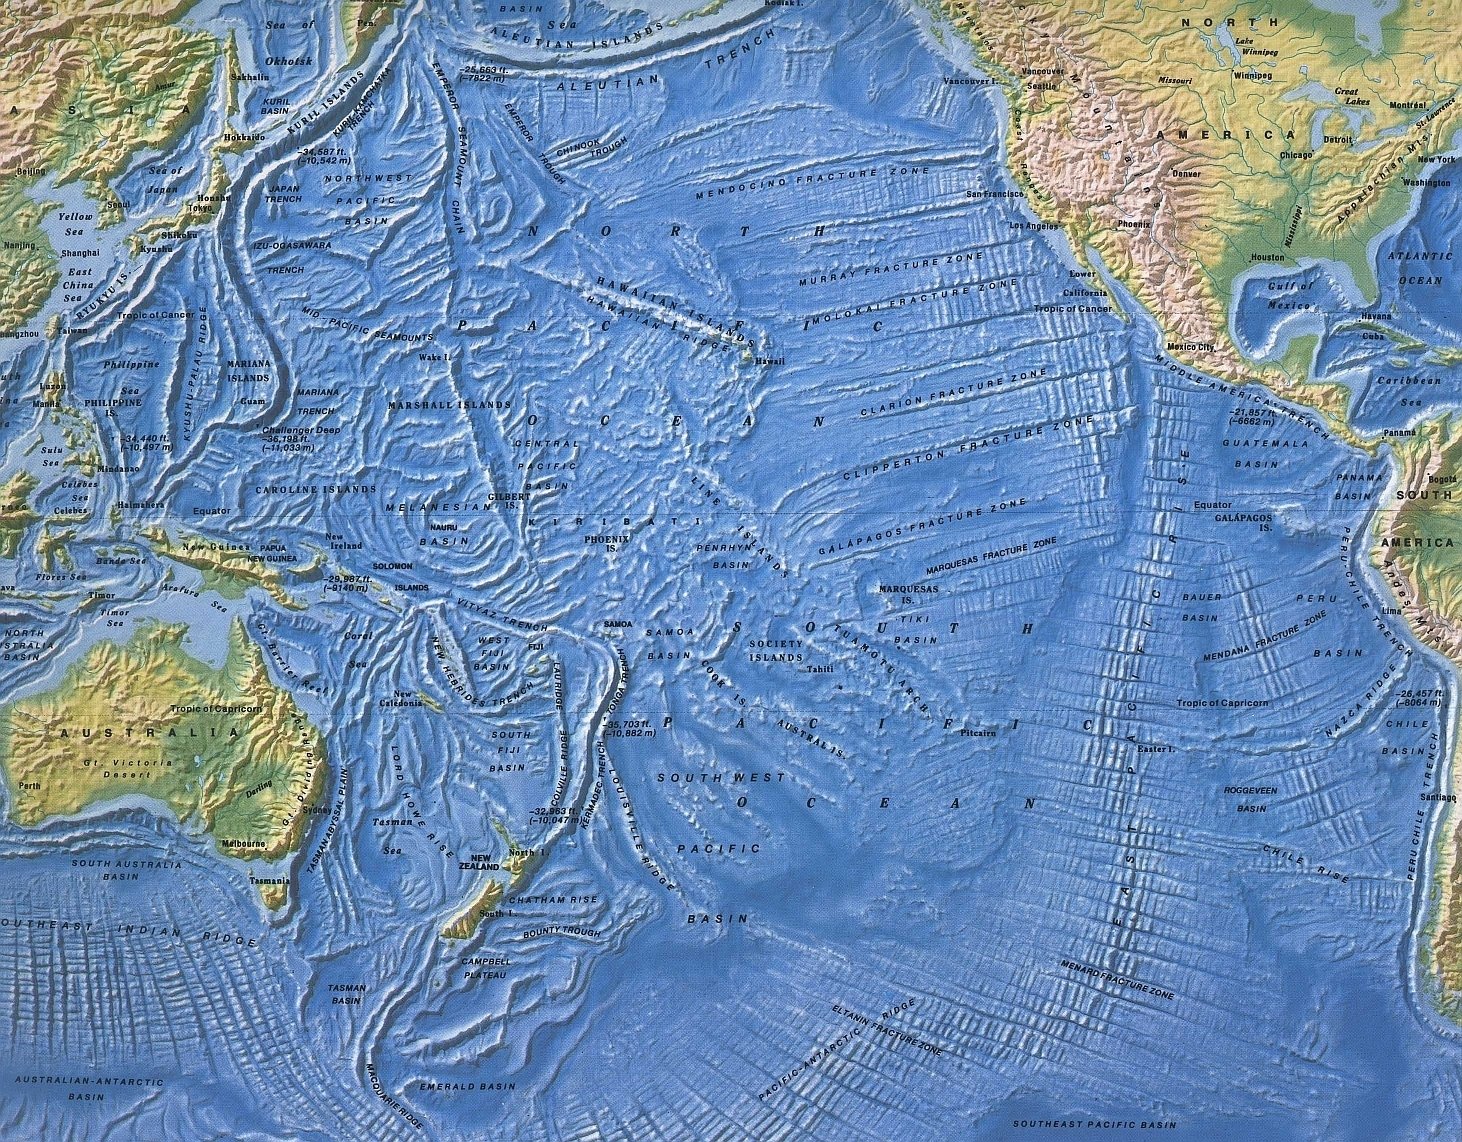 Индийский океан форма. Карта рельефа Тихого океана. Карта рельефа дна Тихого океана. Рельеф дна Тихого океана. Рельеф дна океана Тихого океана карта.